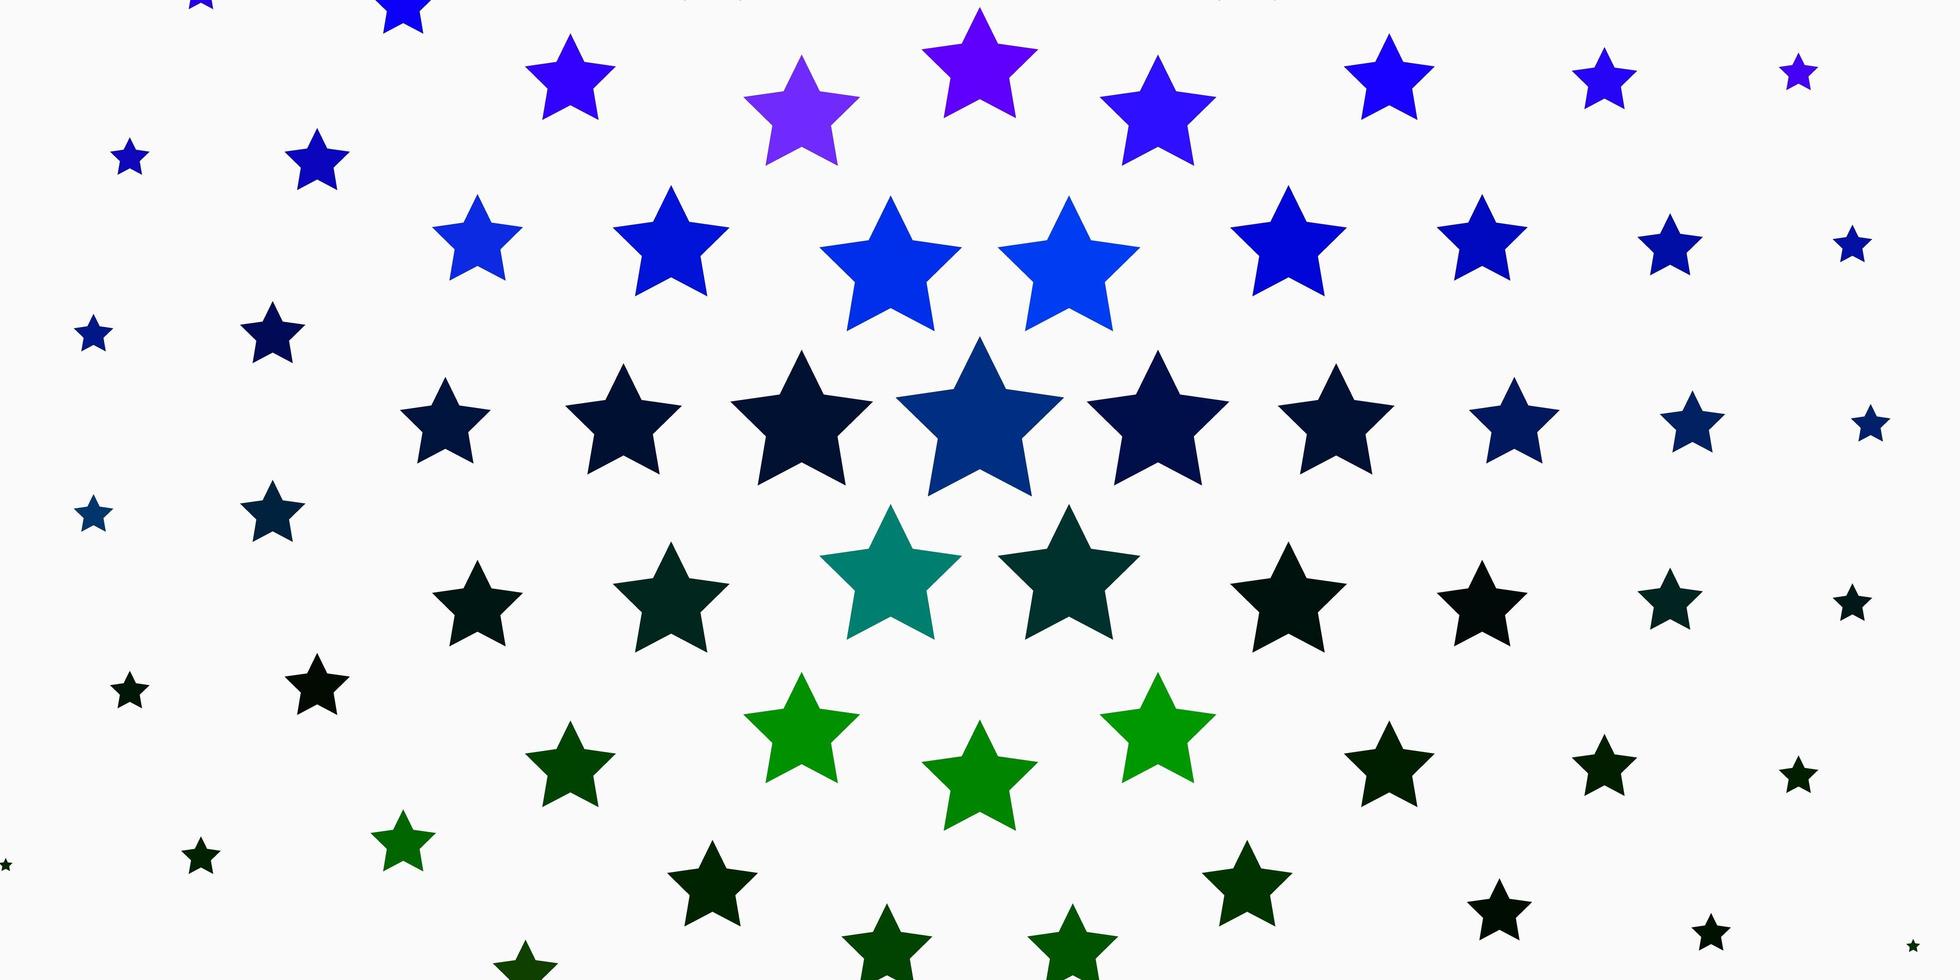 licht veelkleurige vector achtergrond met kleine en grote sterren moderne geometrische abstracte illustratie met sterren patroon voor websites bestemmingspagina's